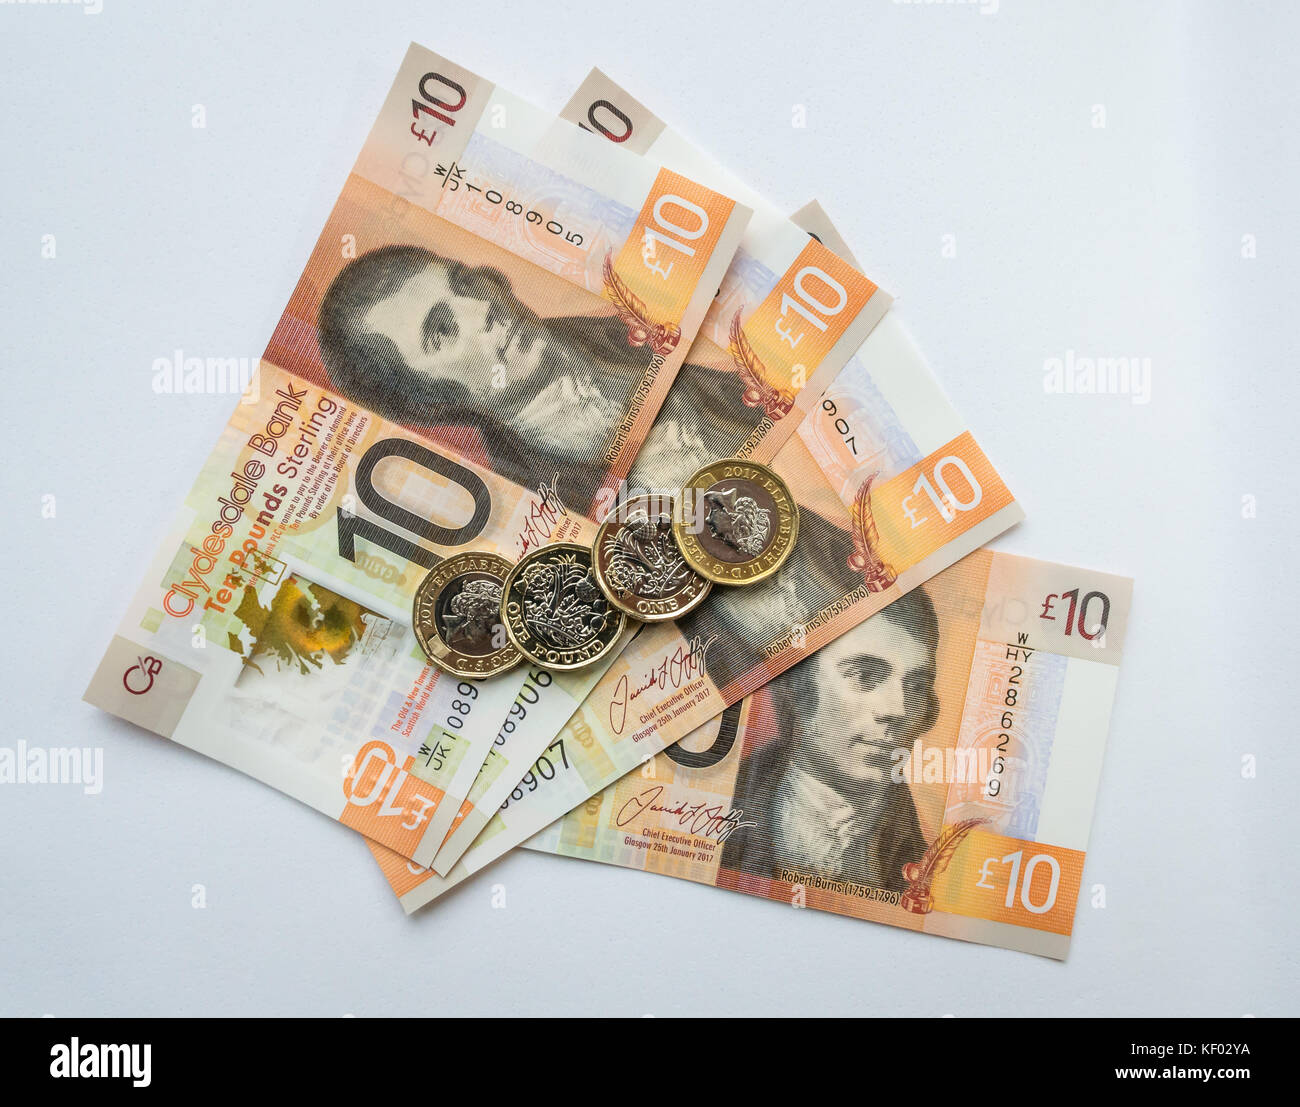 Polimero plastico Clydesdale Bank Scottish dieci libbre £10 banconote con Robert Burns e esagonale pound £ 1 monete su sfondo bianco Foto Stock